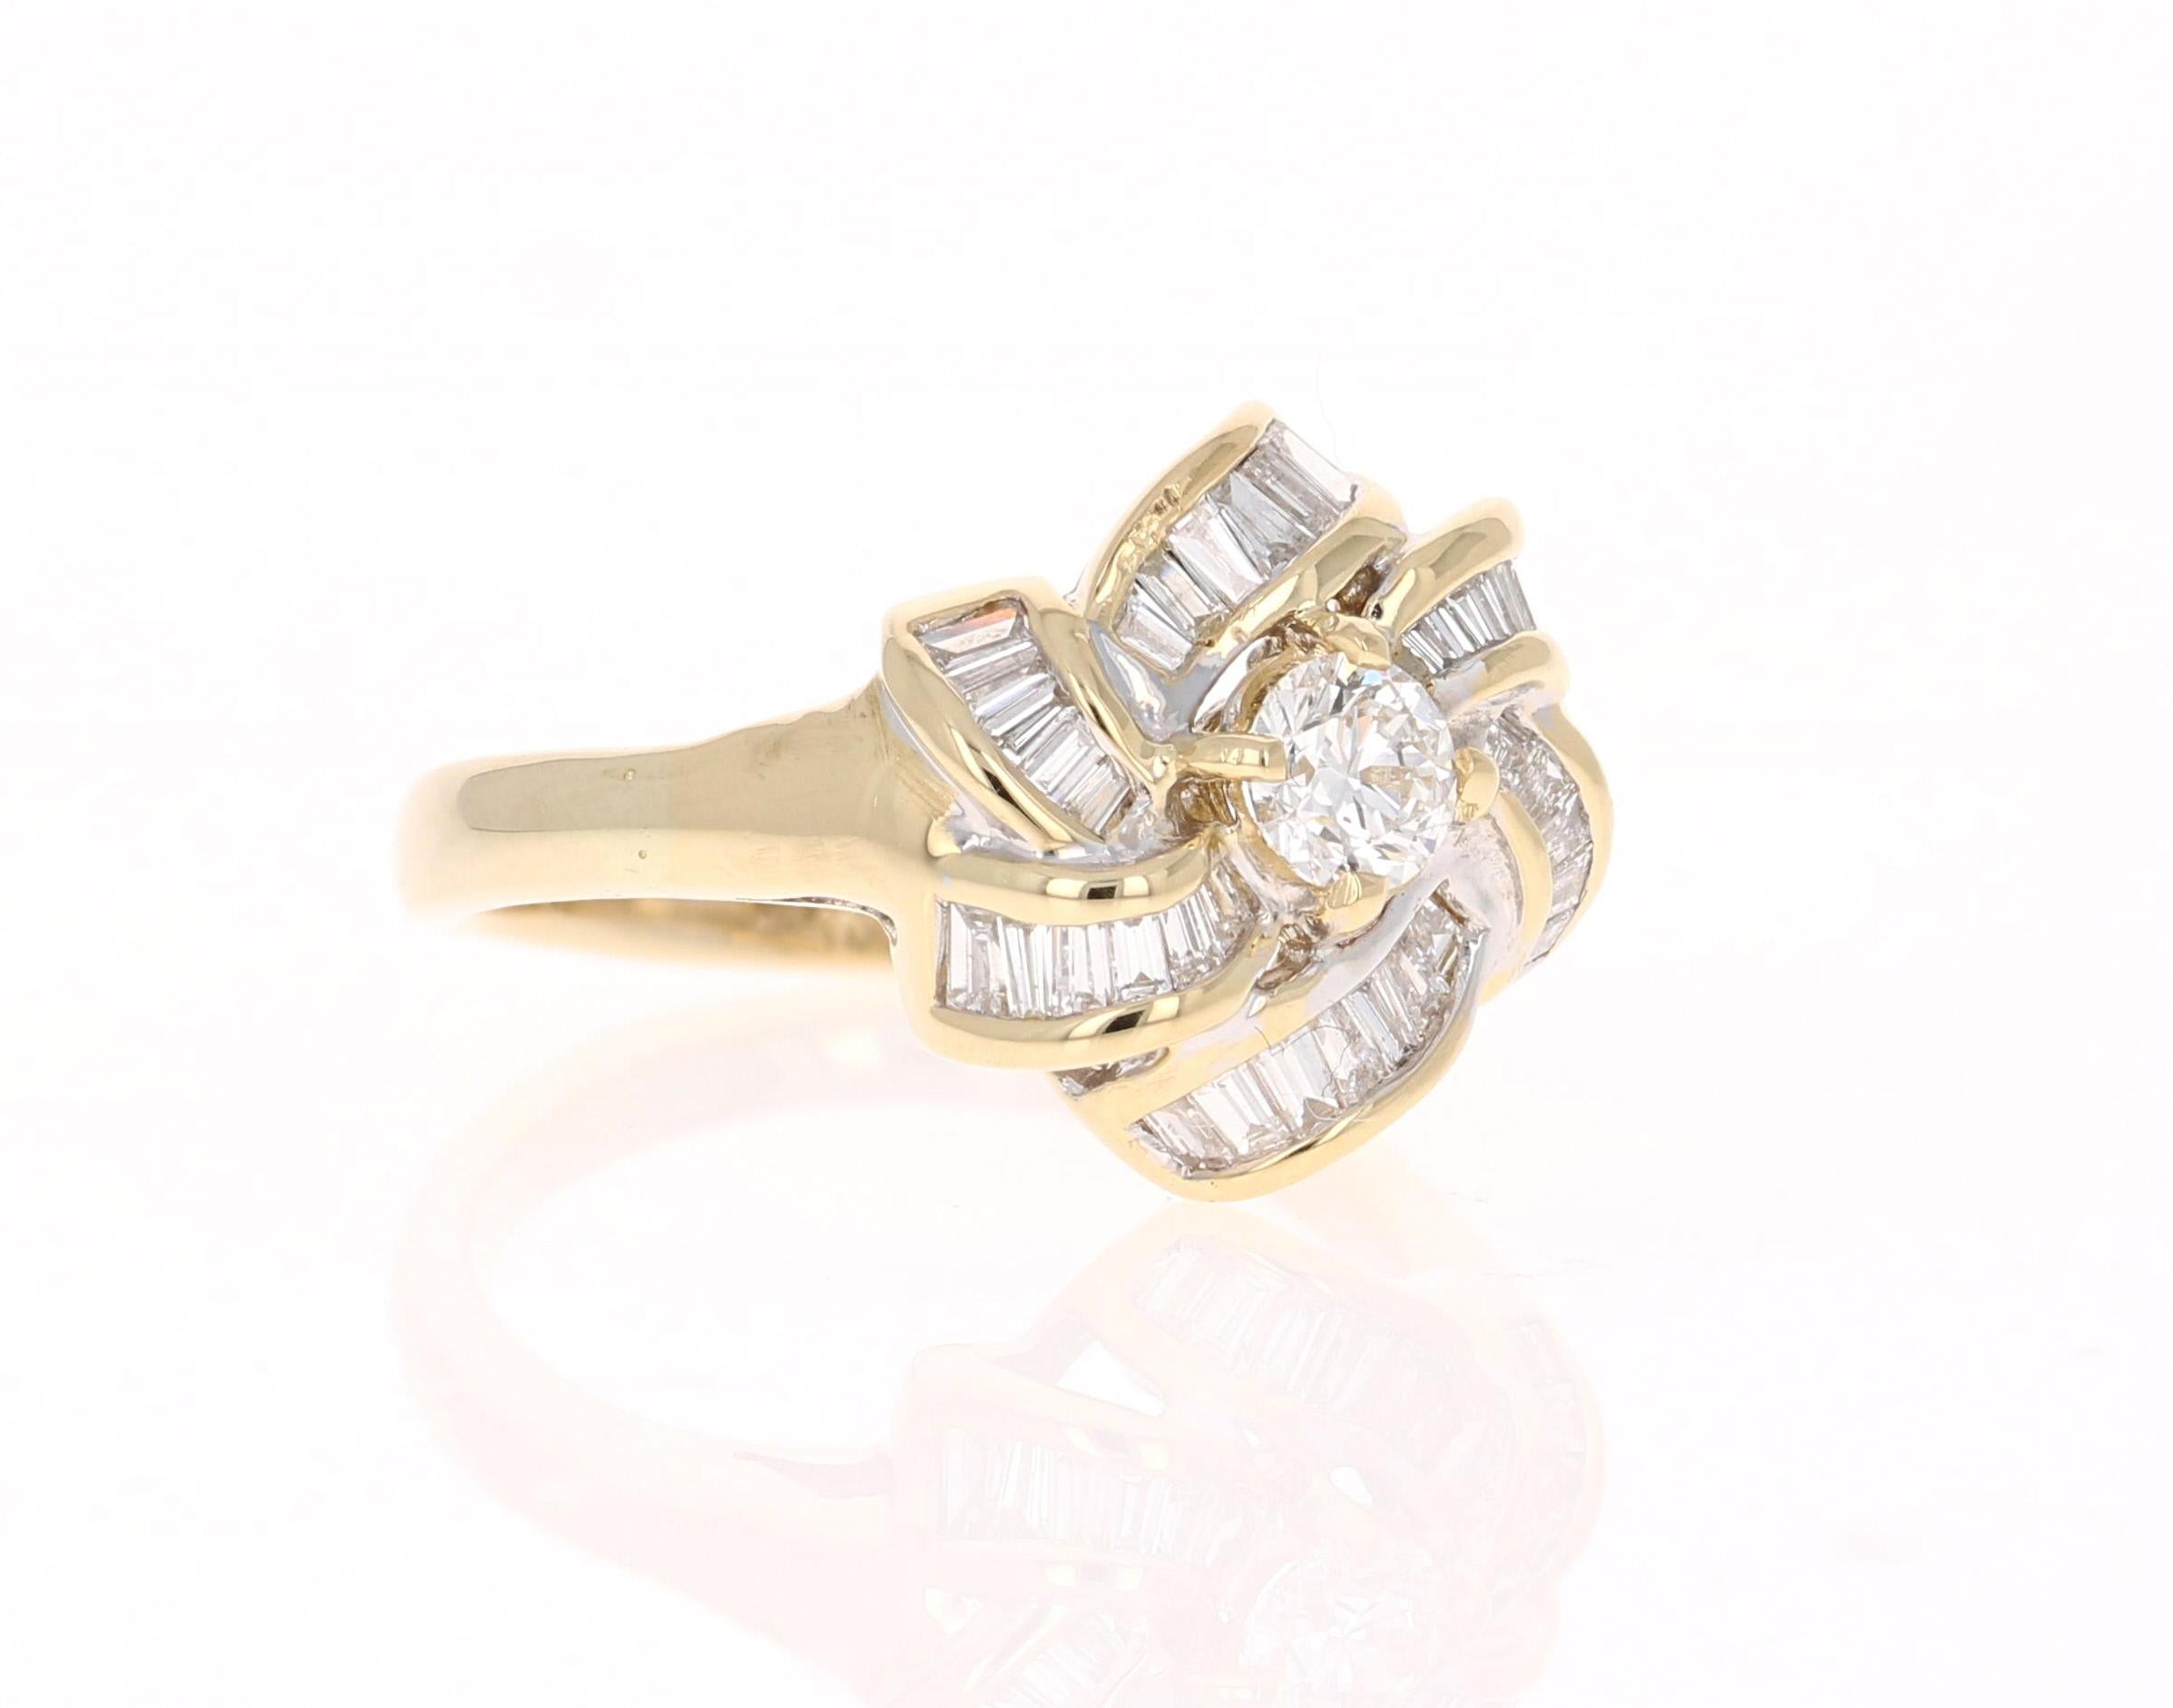 Klassischer Baguette- und Rundschliff-Diamant-Cluster-Ring

Dieser Ring hat einen runden Diamanten mit einem Gewicht von 0,37 Karat. Er hat 36 Diamanten im Baguetteschliff mit einem Gewicht von 0,95 Karat. Das Gesamtkaratgewicht des Rings beträgt